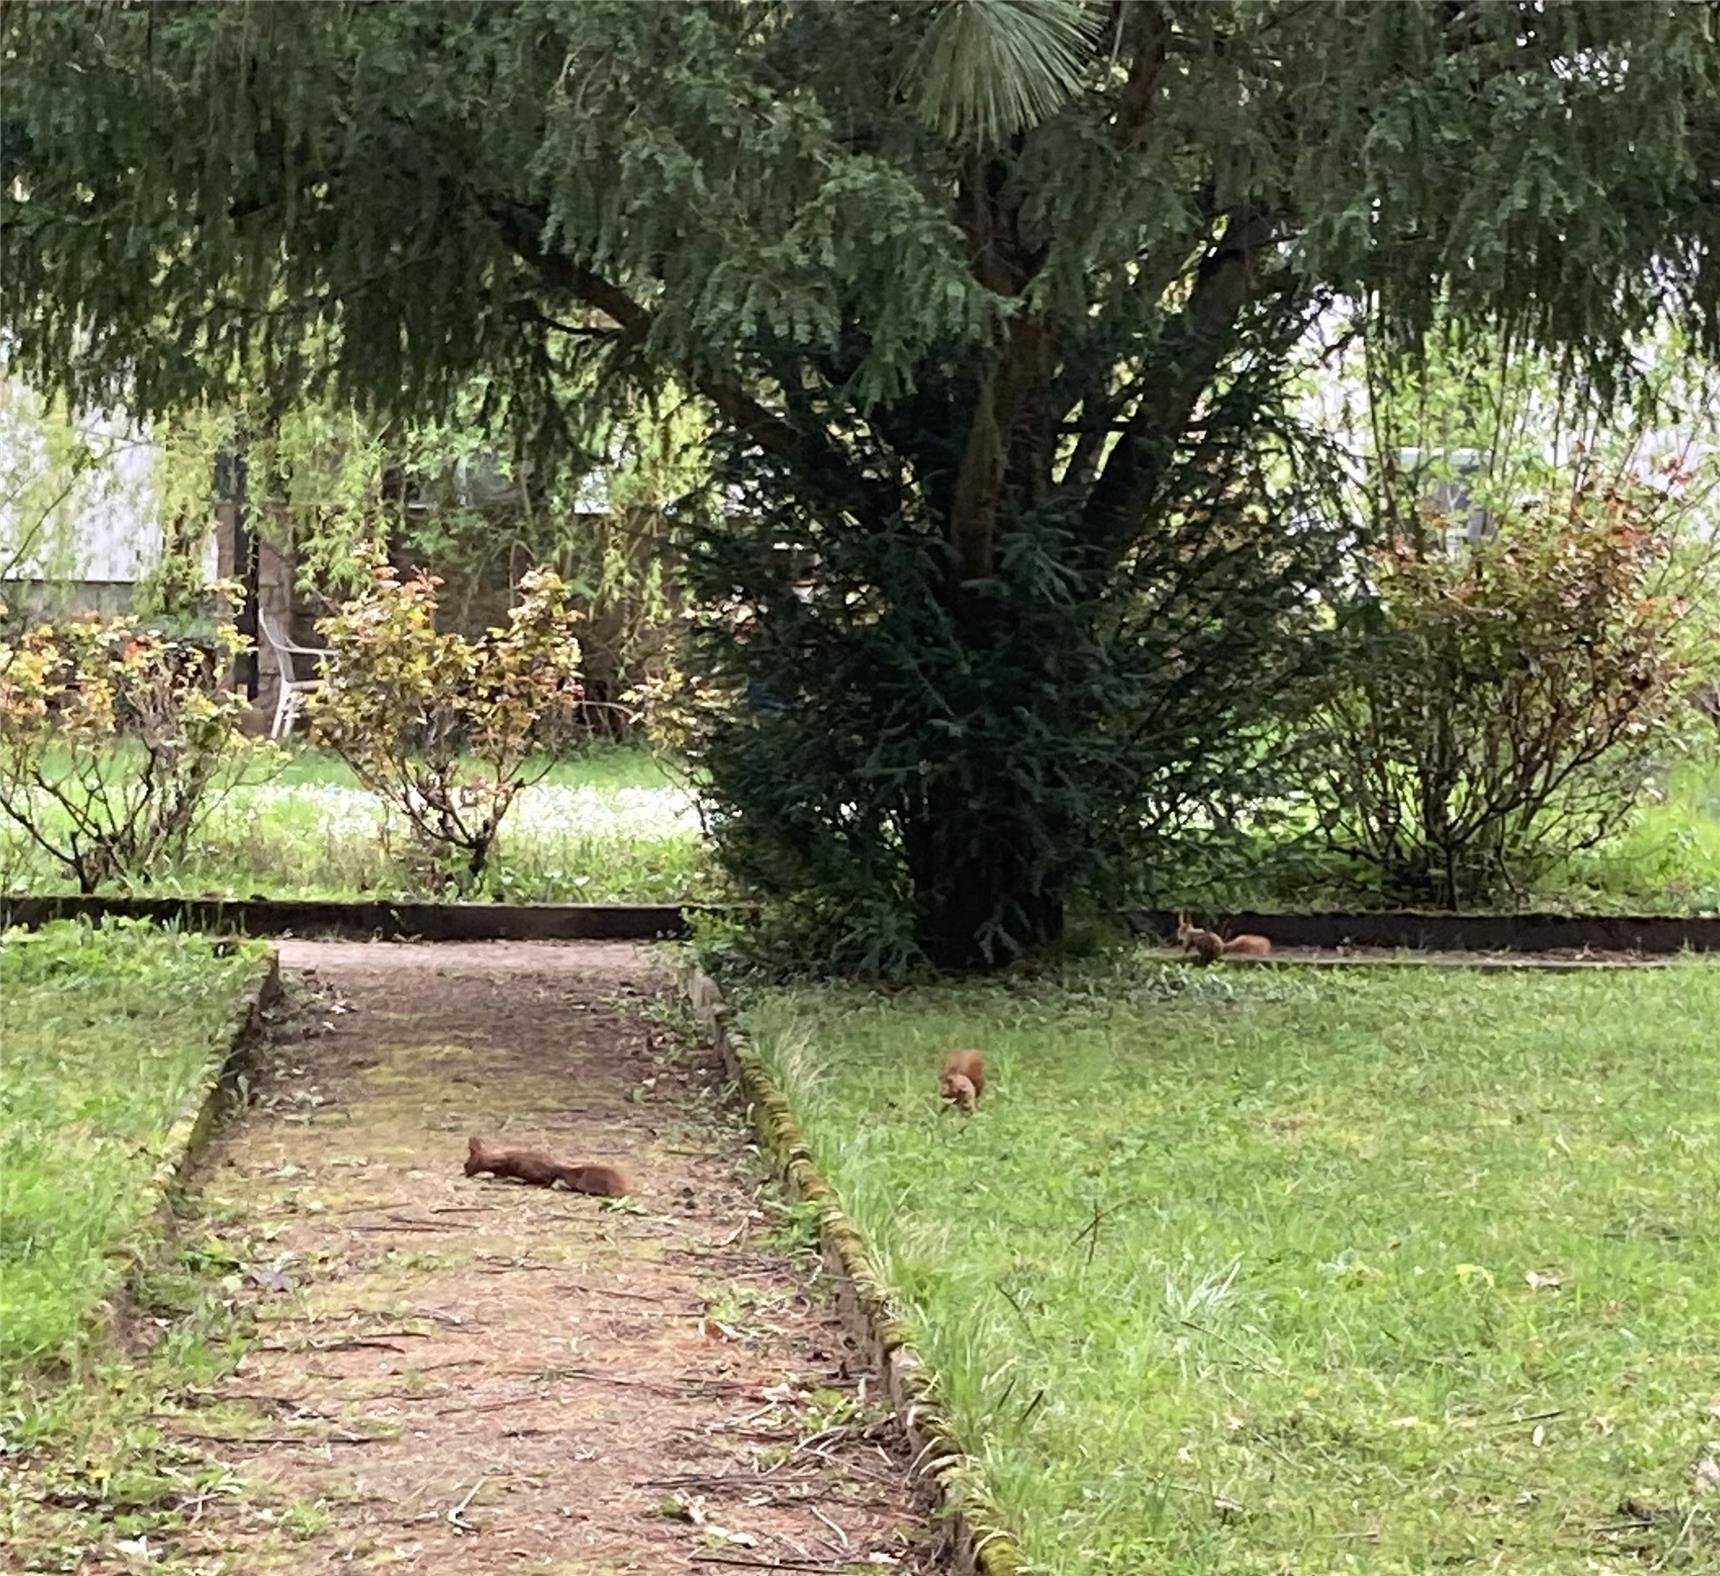 Eichhörnchen im Park